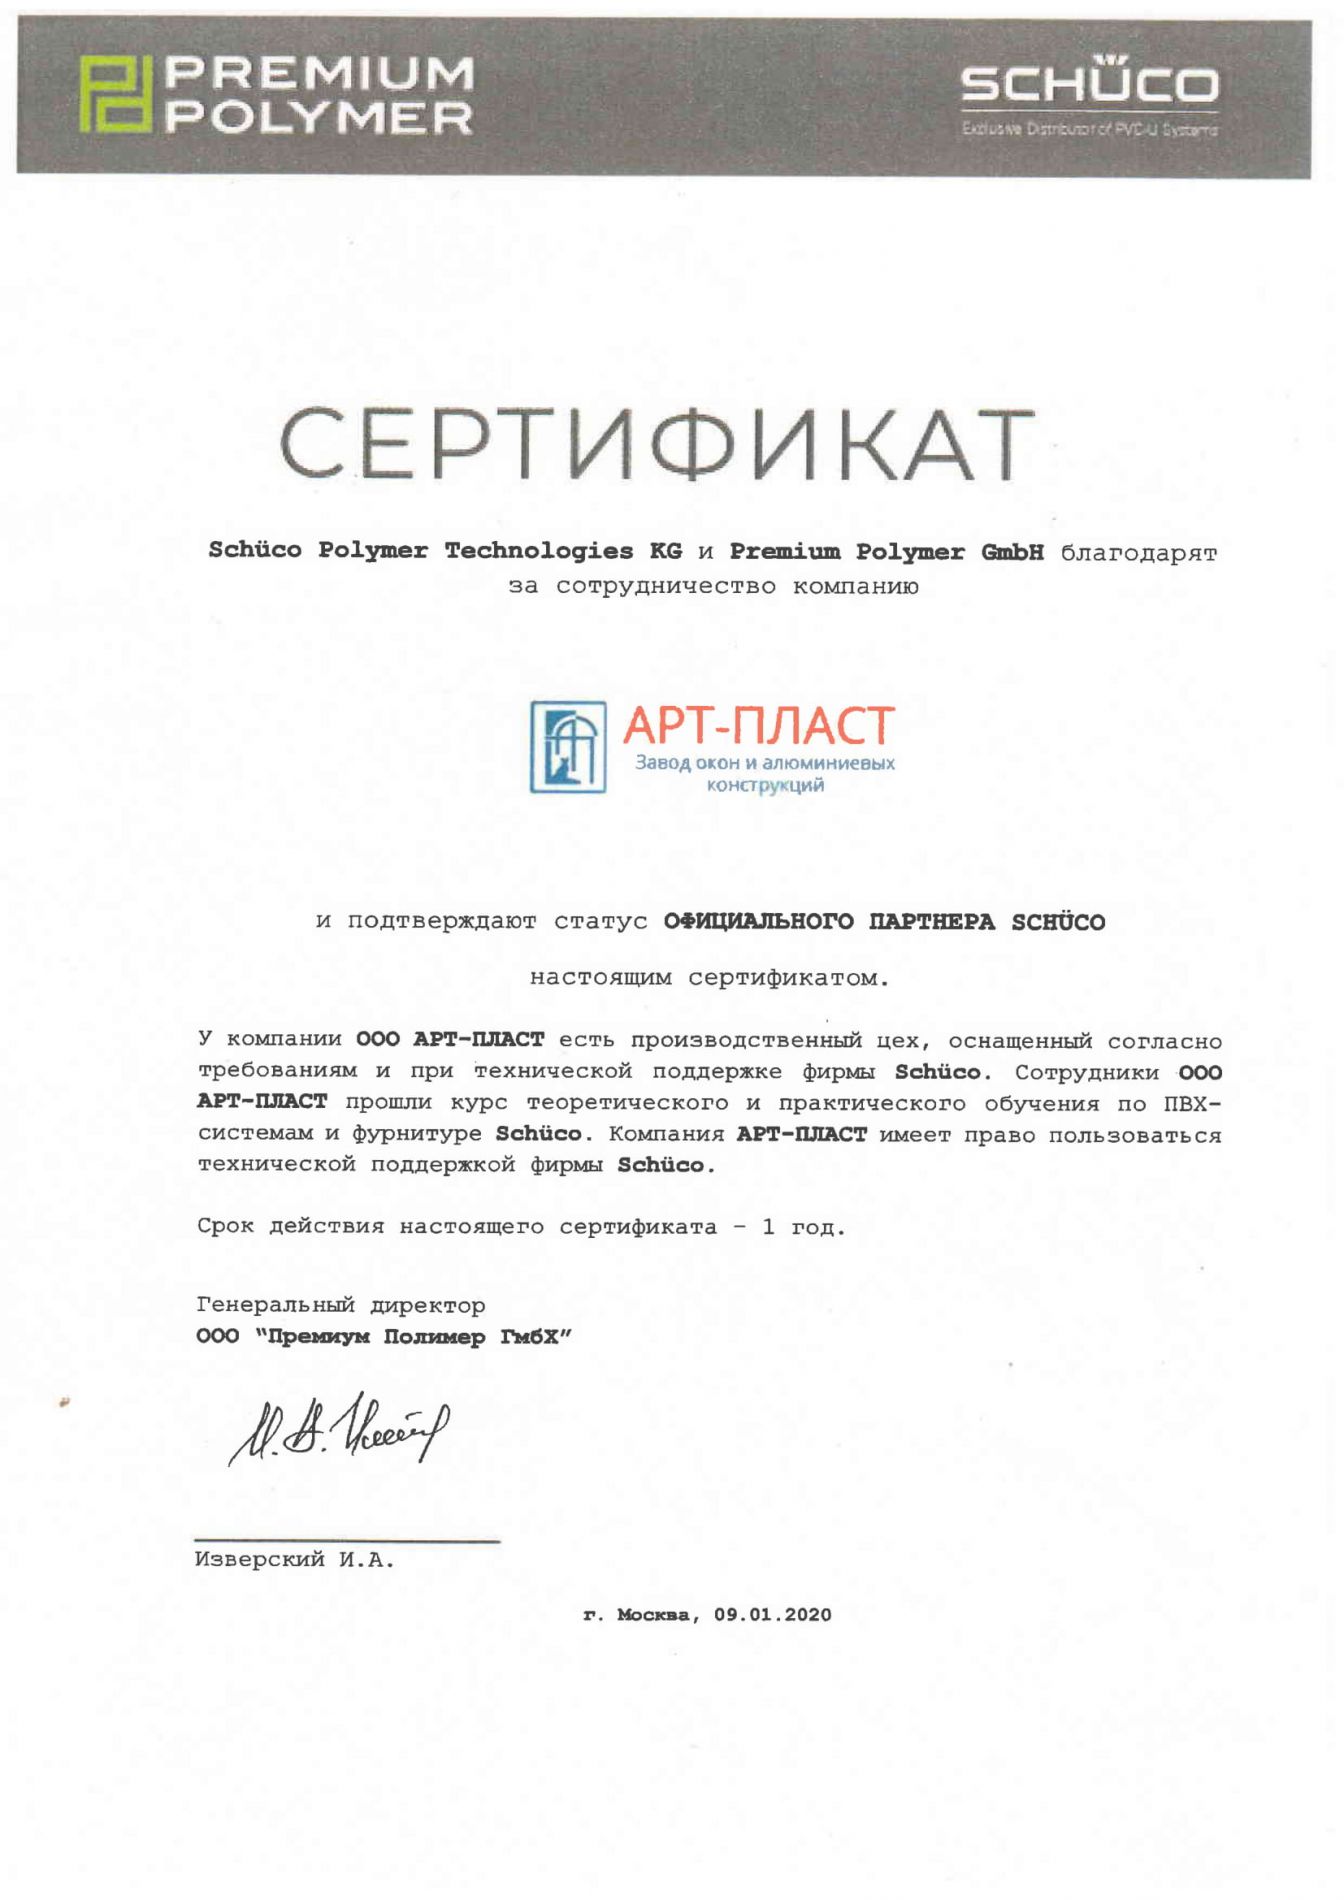 Сертификат АРТ-ПЛАСТ